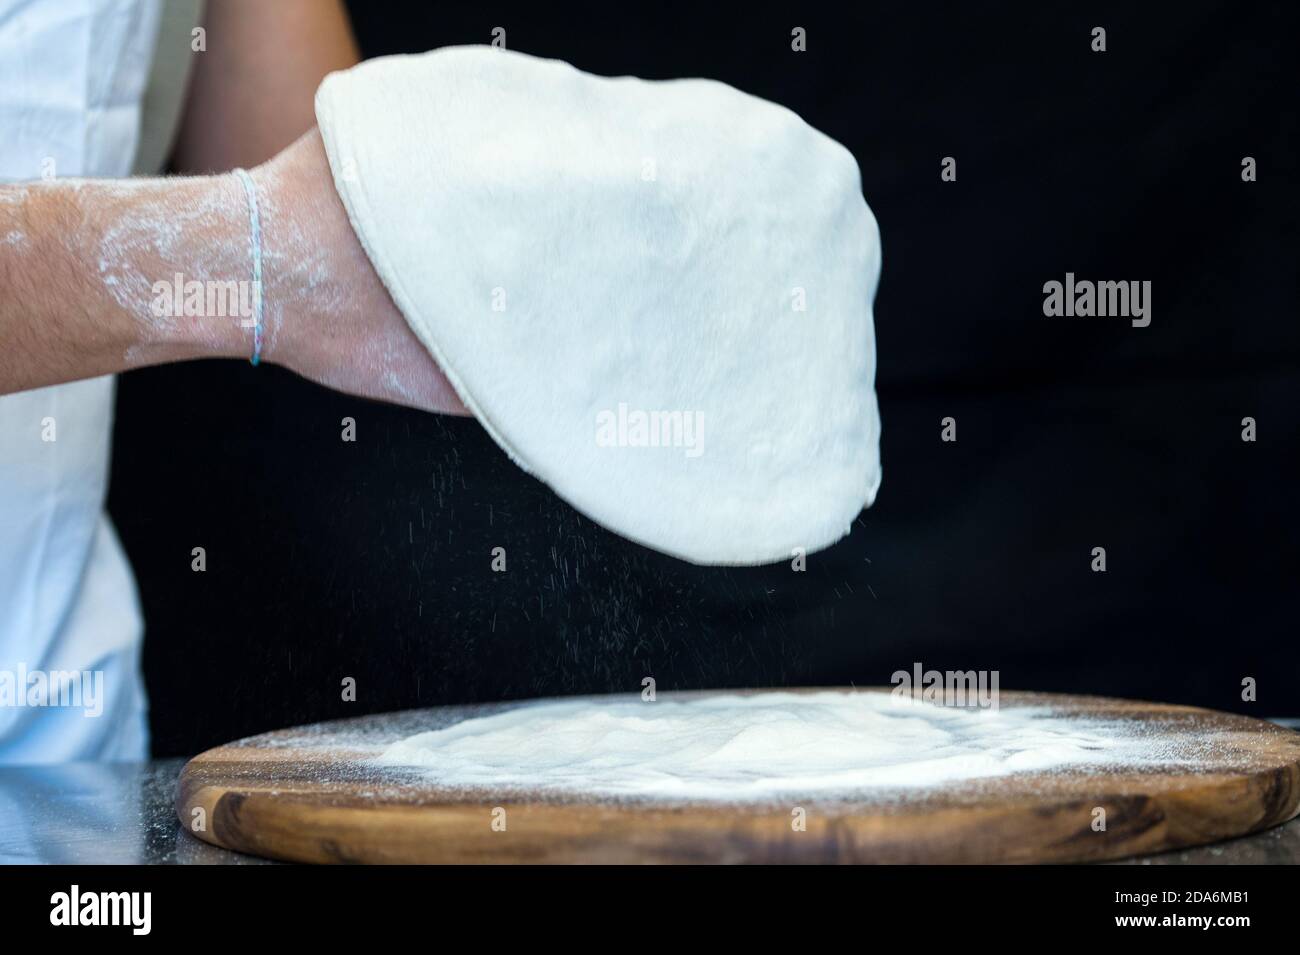 Dettaglio delle mani di uno chef pizzeria che lavora per le varie fasi di preparazione di una vera pizza italiana fatta in casa con farina di lievito e acqua. Foto Stock